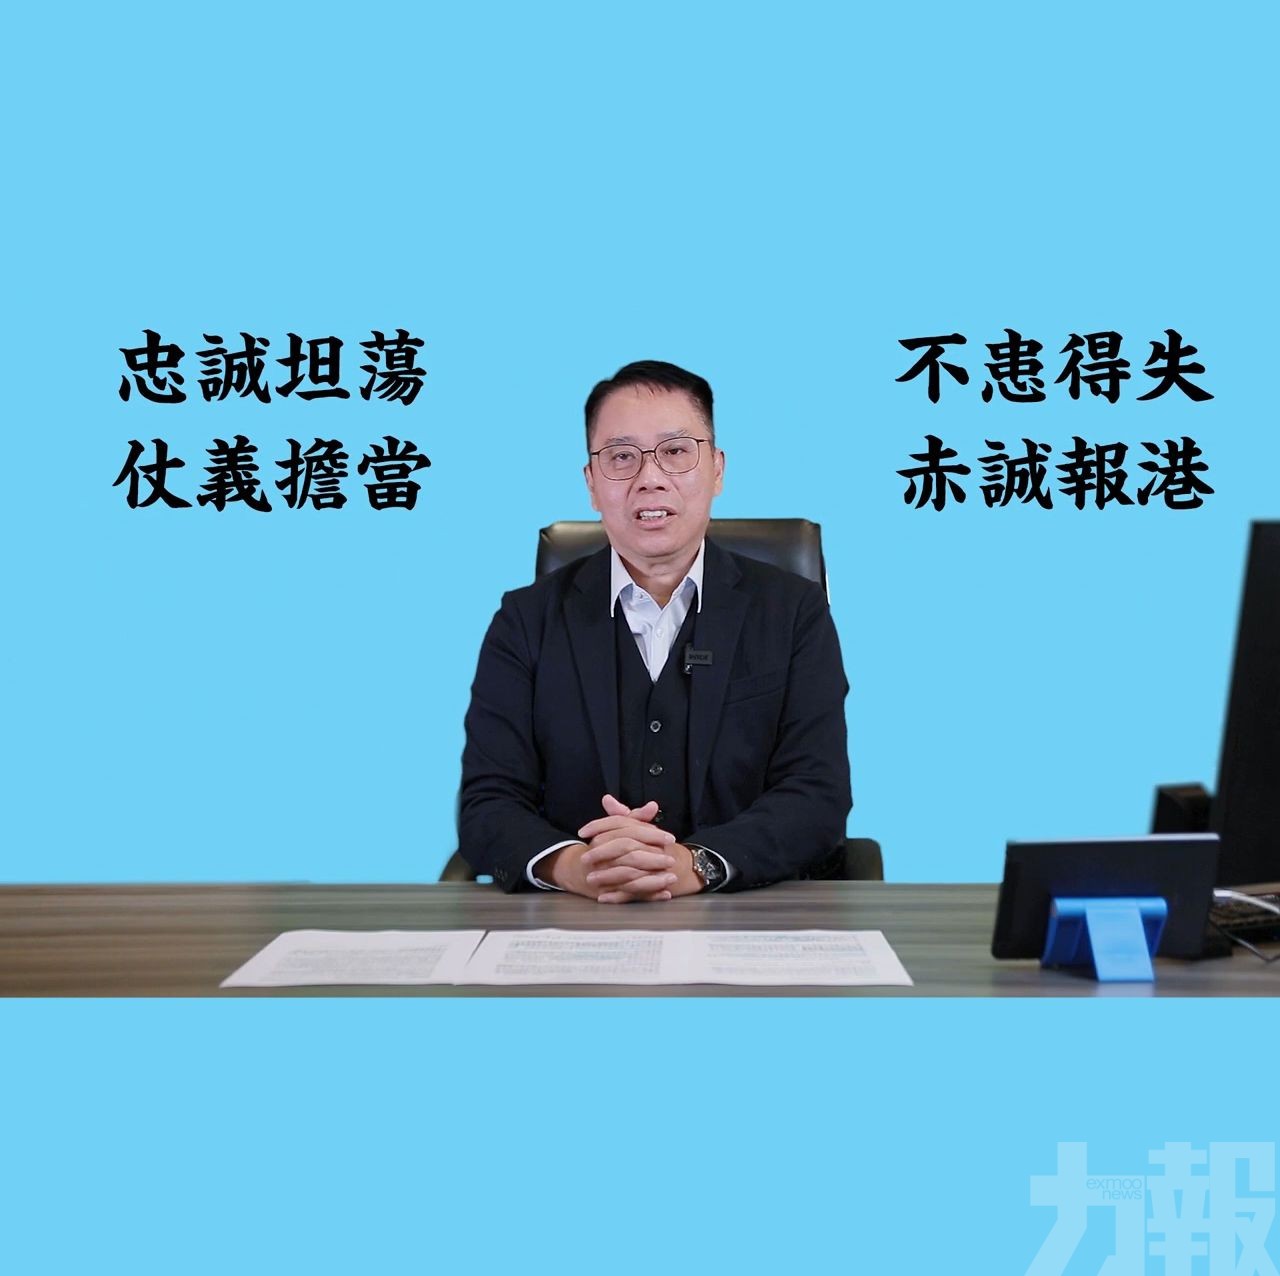 商人冼國林宣布參選香港特首